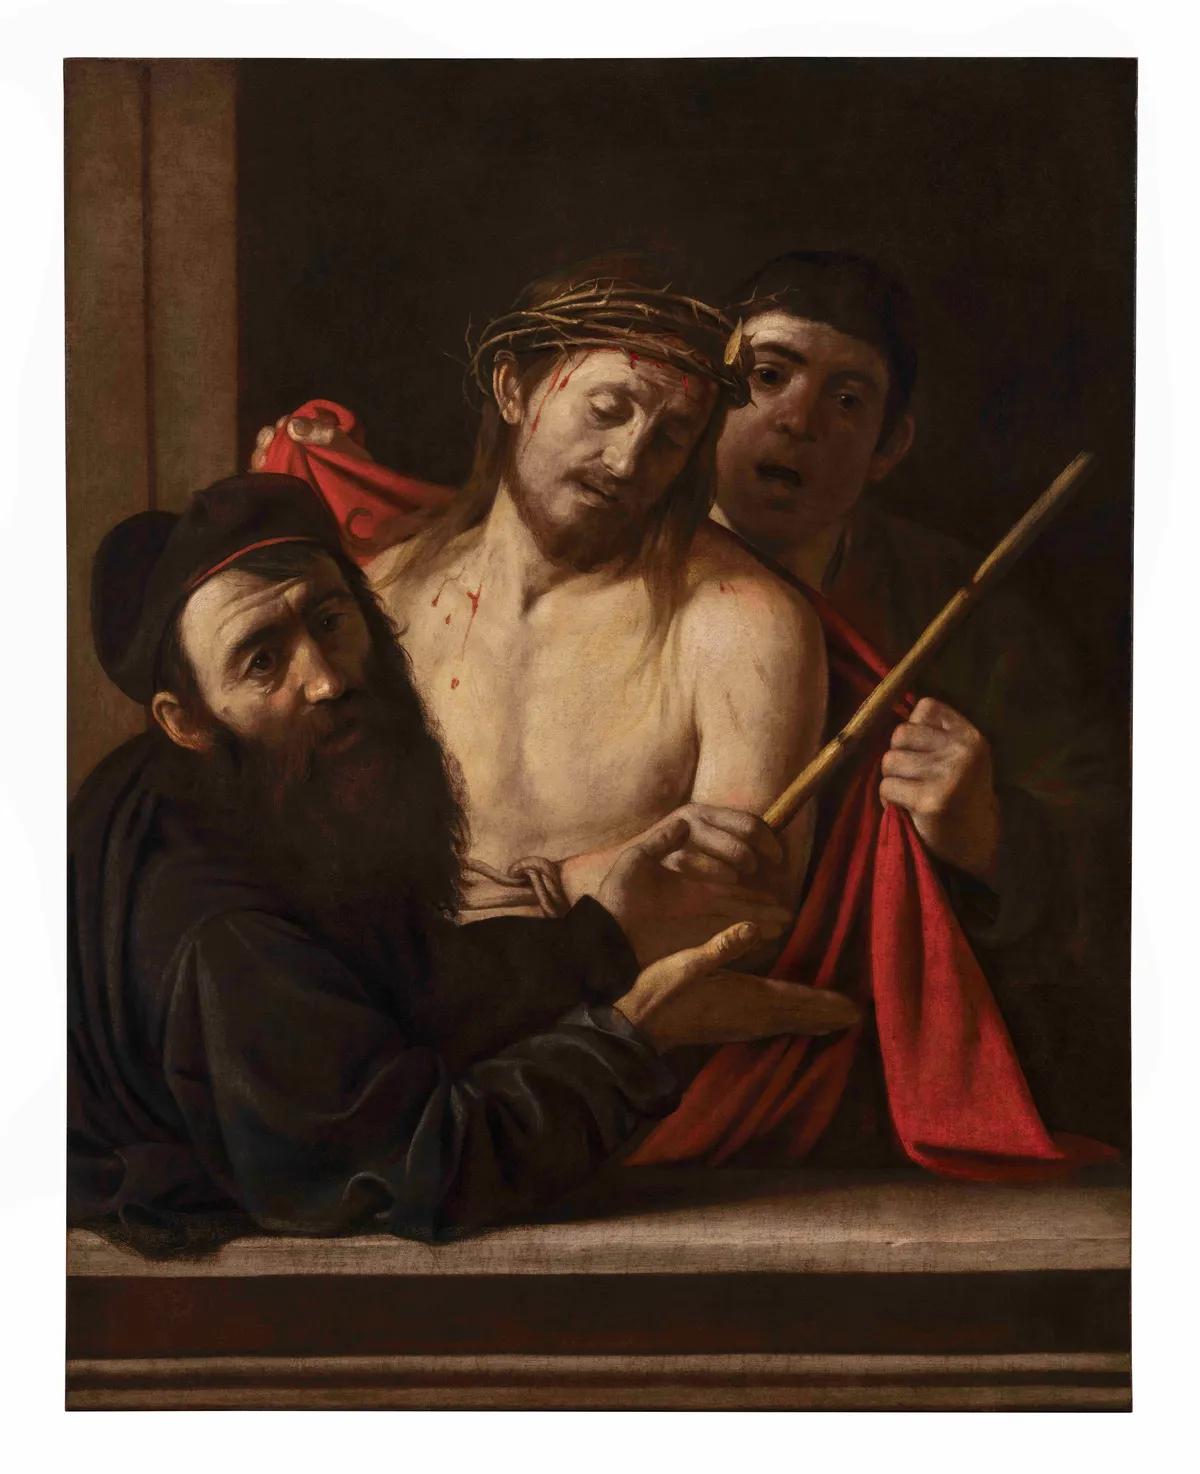 Michelangelo Merisi (known as Caravaggio), Ecce Homo, around 1605-09. Image courtesy of a private collection